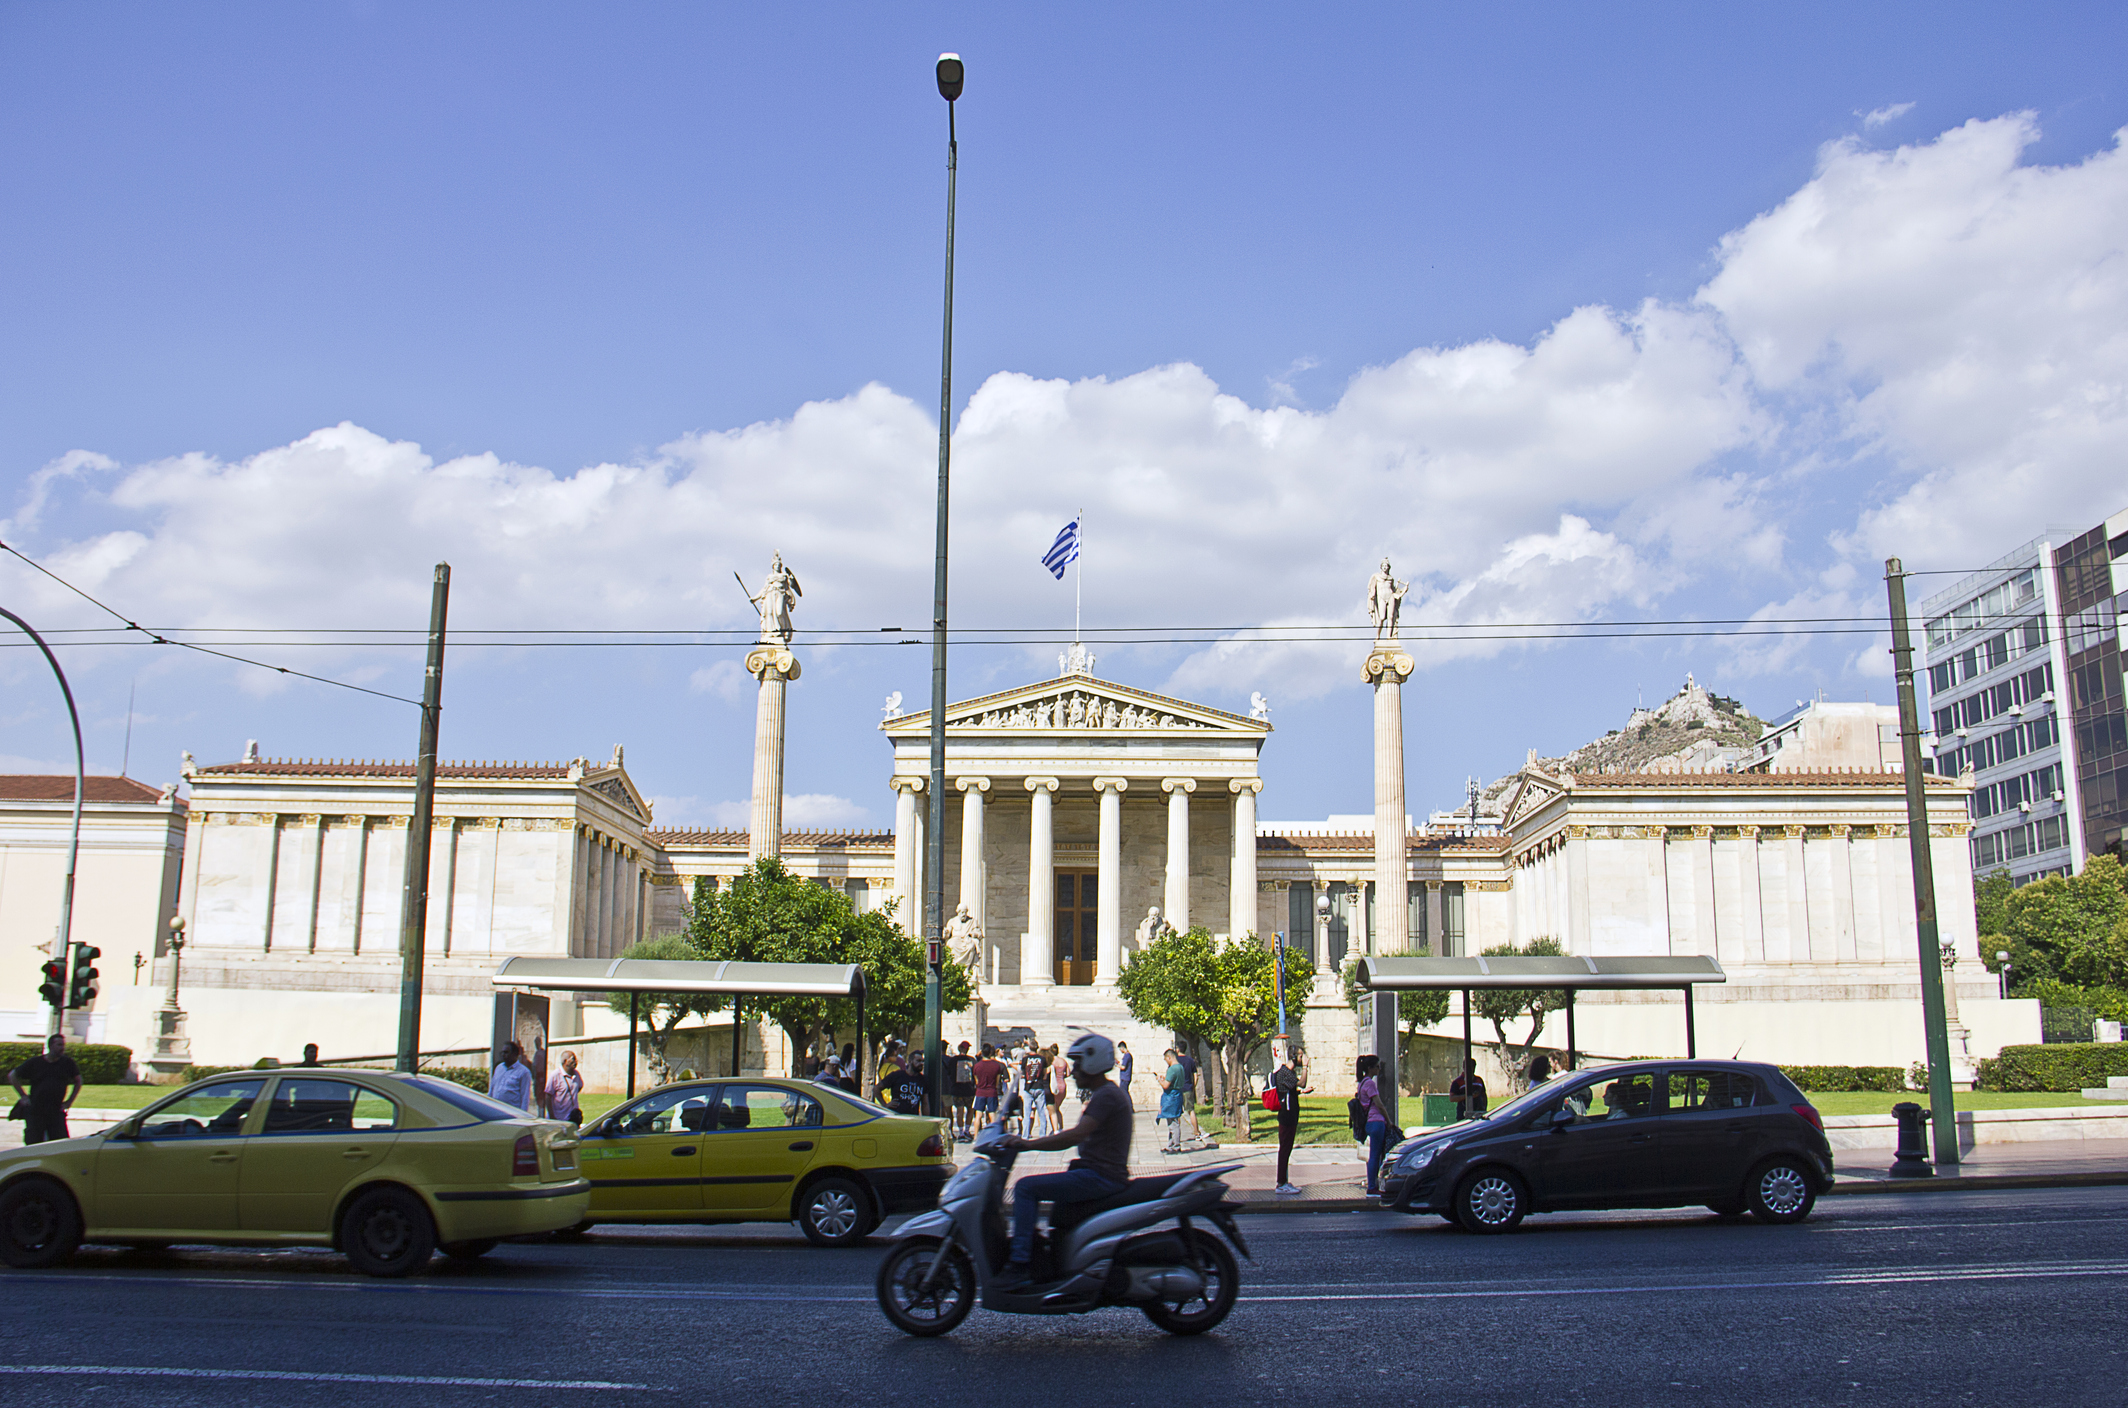 Δακτύλιος: πως θα κυκλοφορούμε από εδώ και πέρα στο κέντρο της Αθήνας;